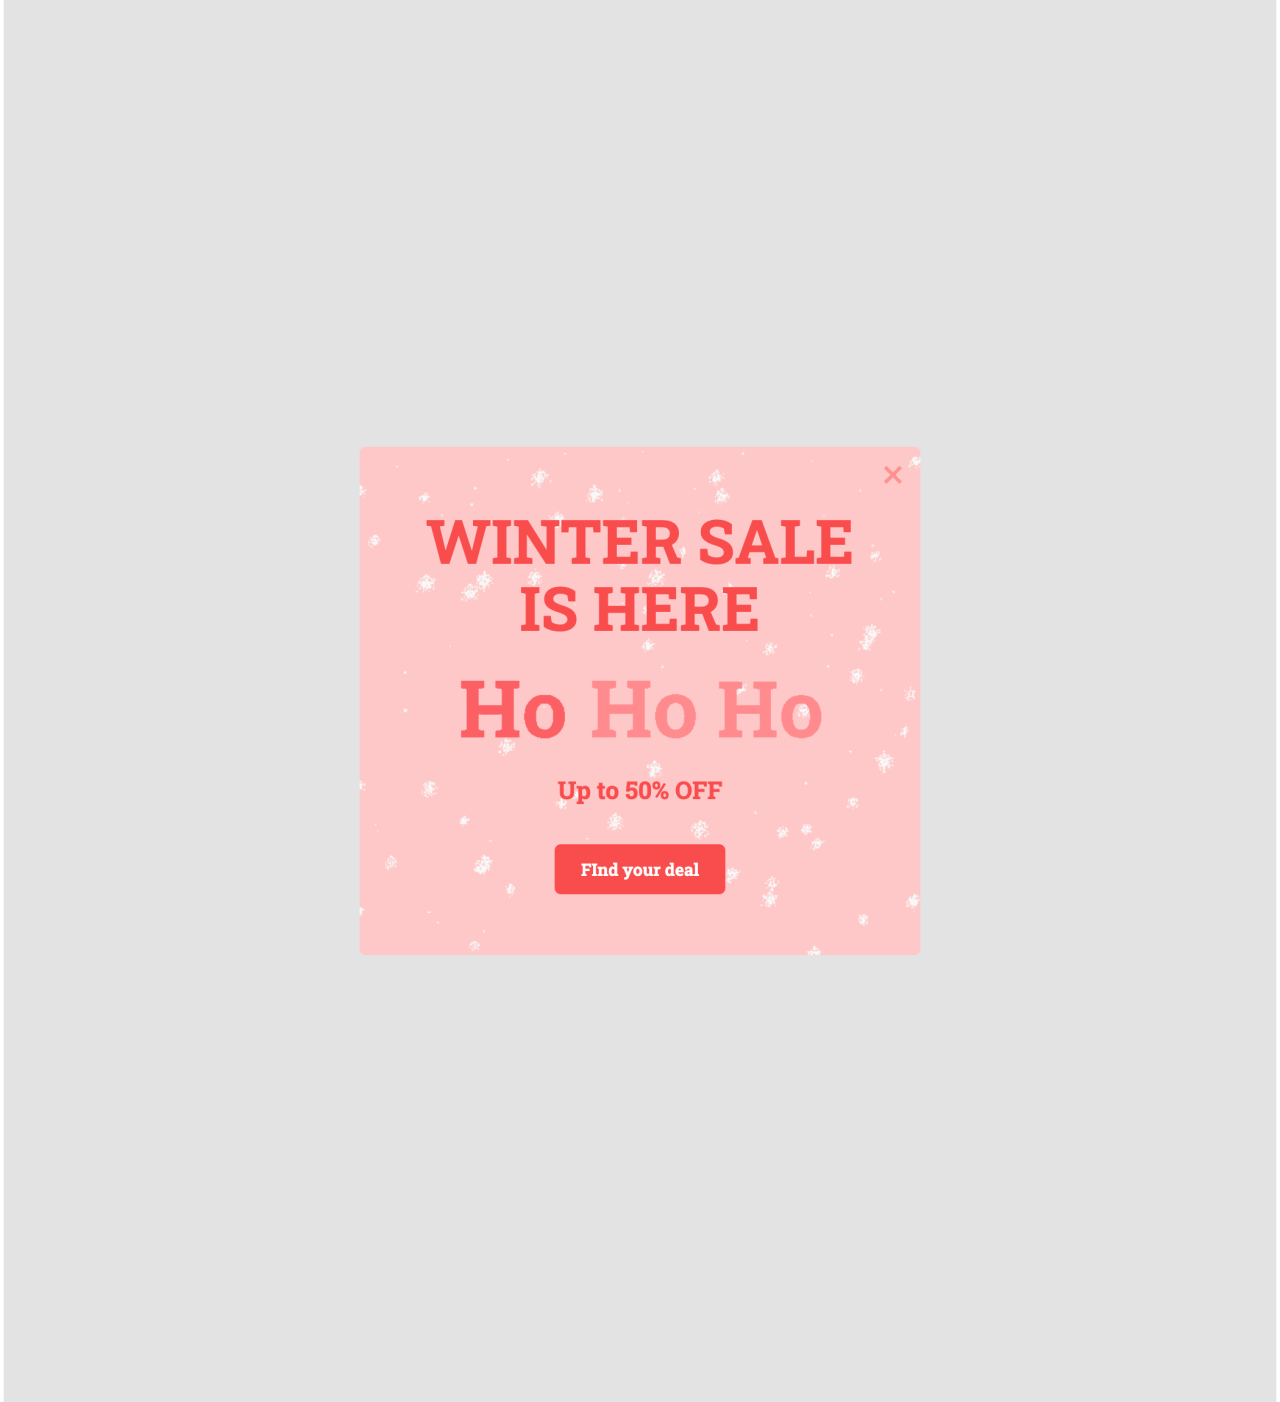 Oferta promocional de invierno plantilla creada por MailerLite